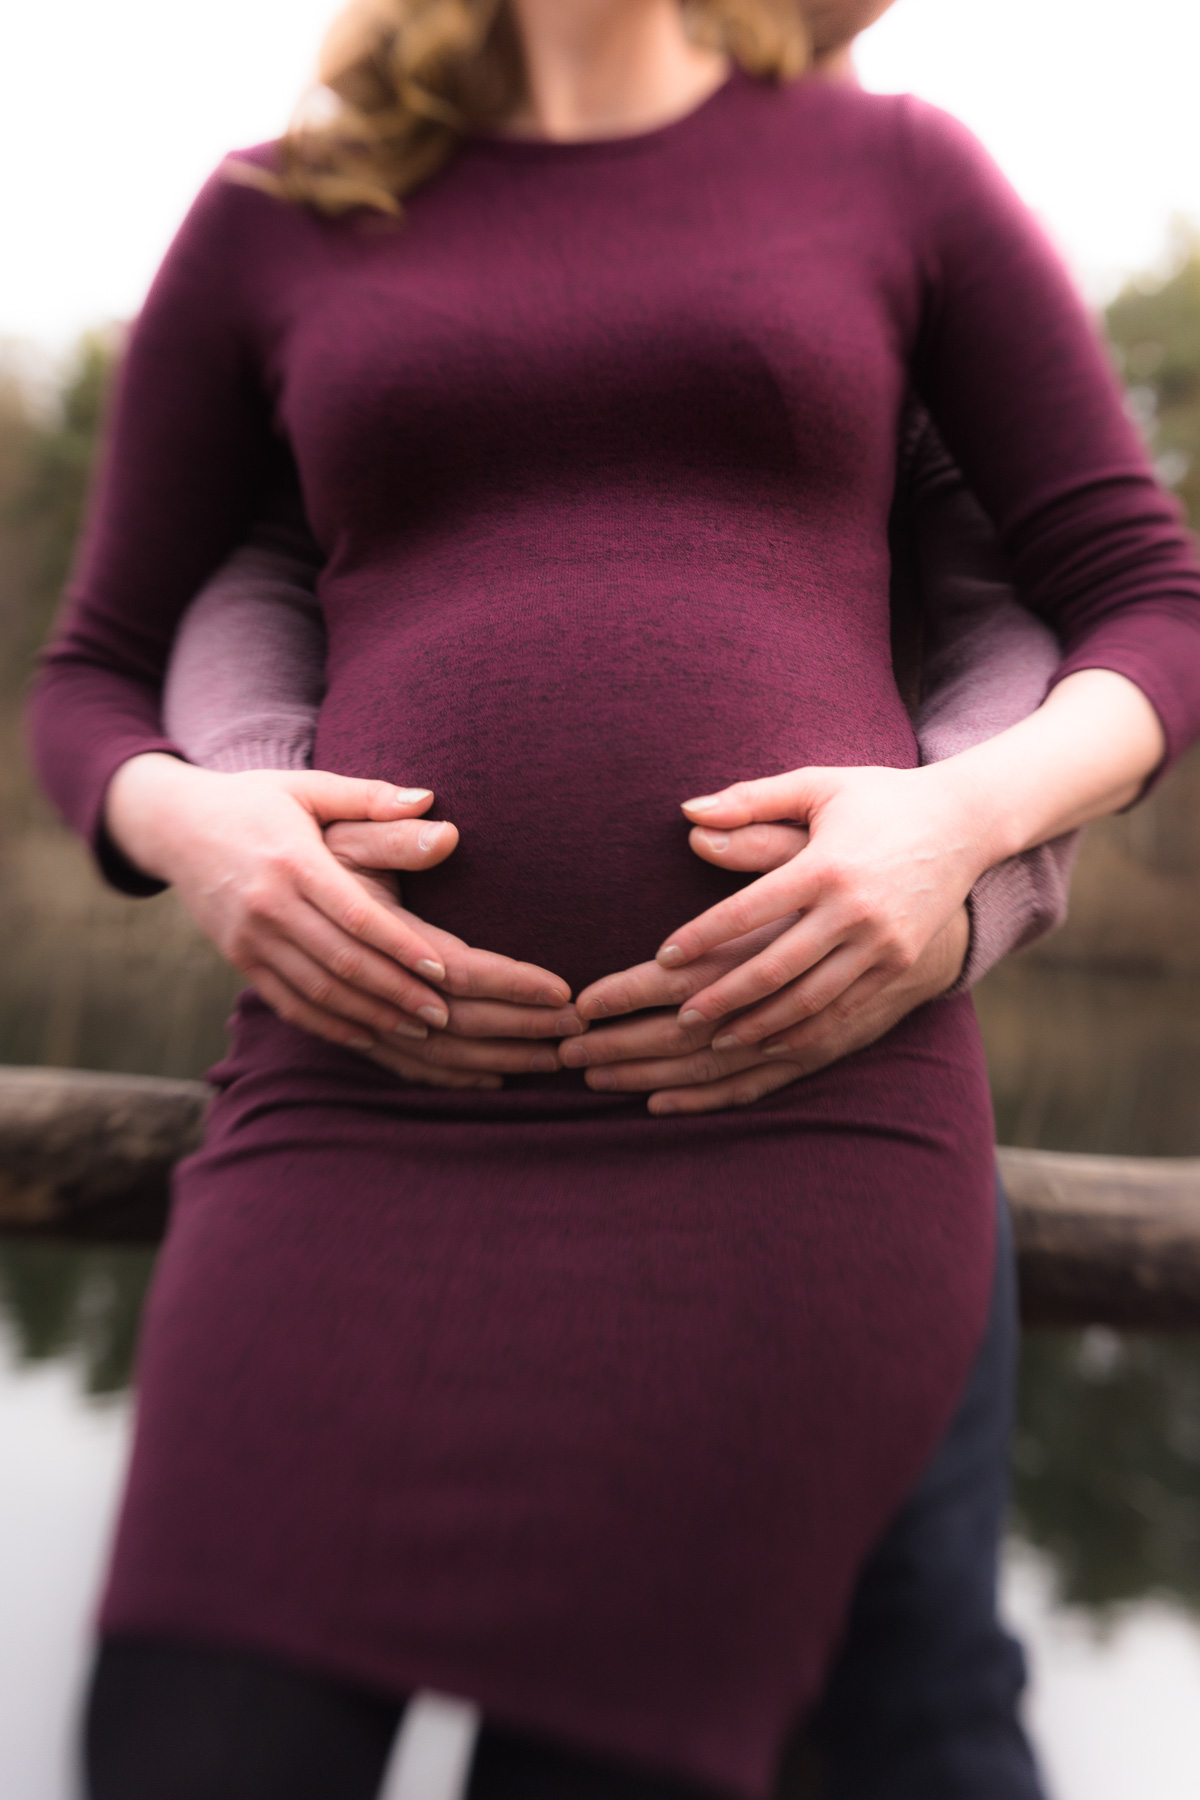 Babybauch-Fotoshooting: Der Babybauch einer schwangeren Frau im dunkel purpurrotem Kleid frontal, während der Bauch von hinten durch die Hände eines Mannes umfasst wird. Die Frau hat ihre Hände auf die Hände des Mannes aufgelegt.